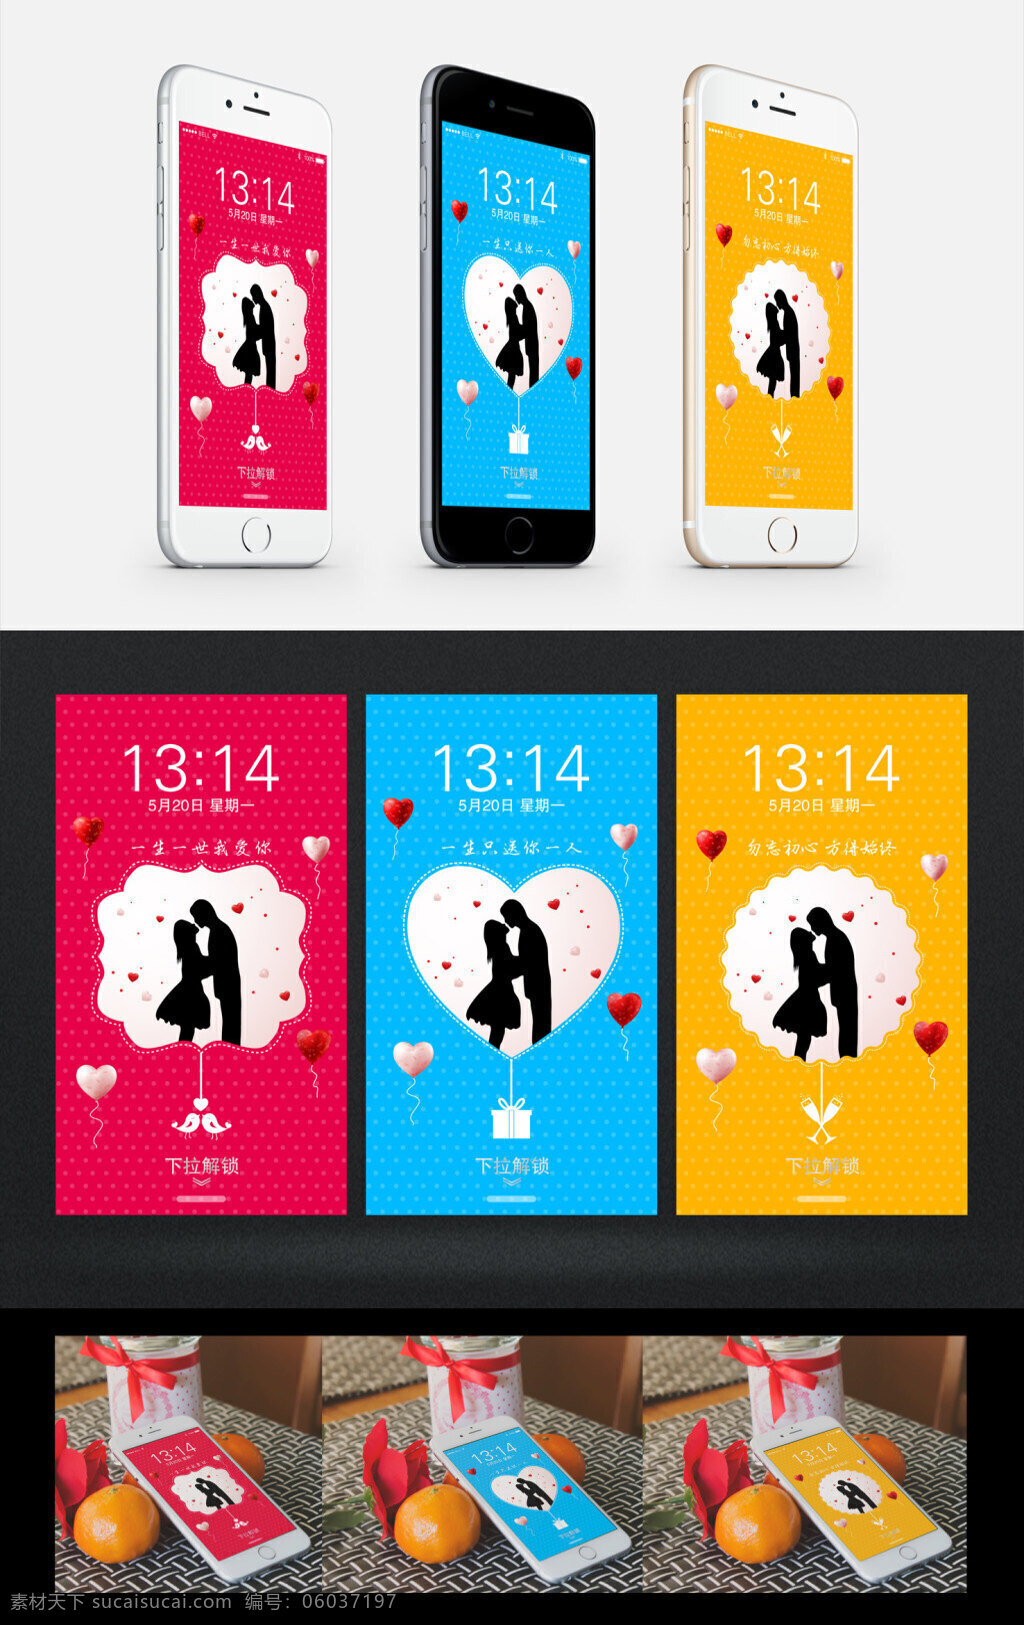 手机屏保 浪漫系列三款 浪漫 情侣 人物剪影 爱心 气球 创意图形